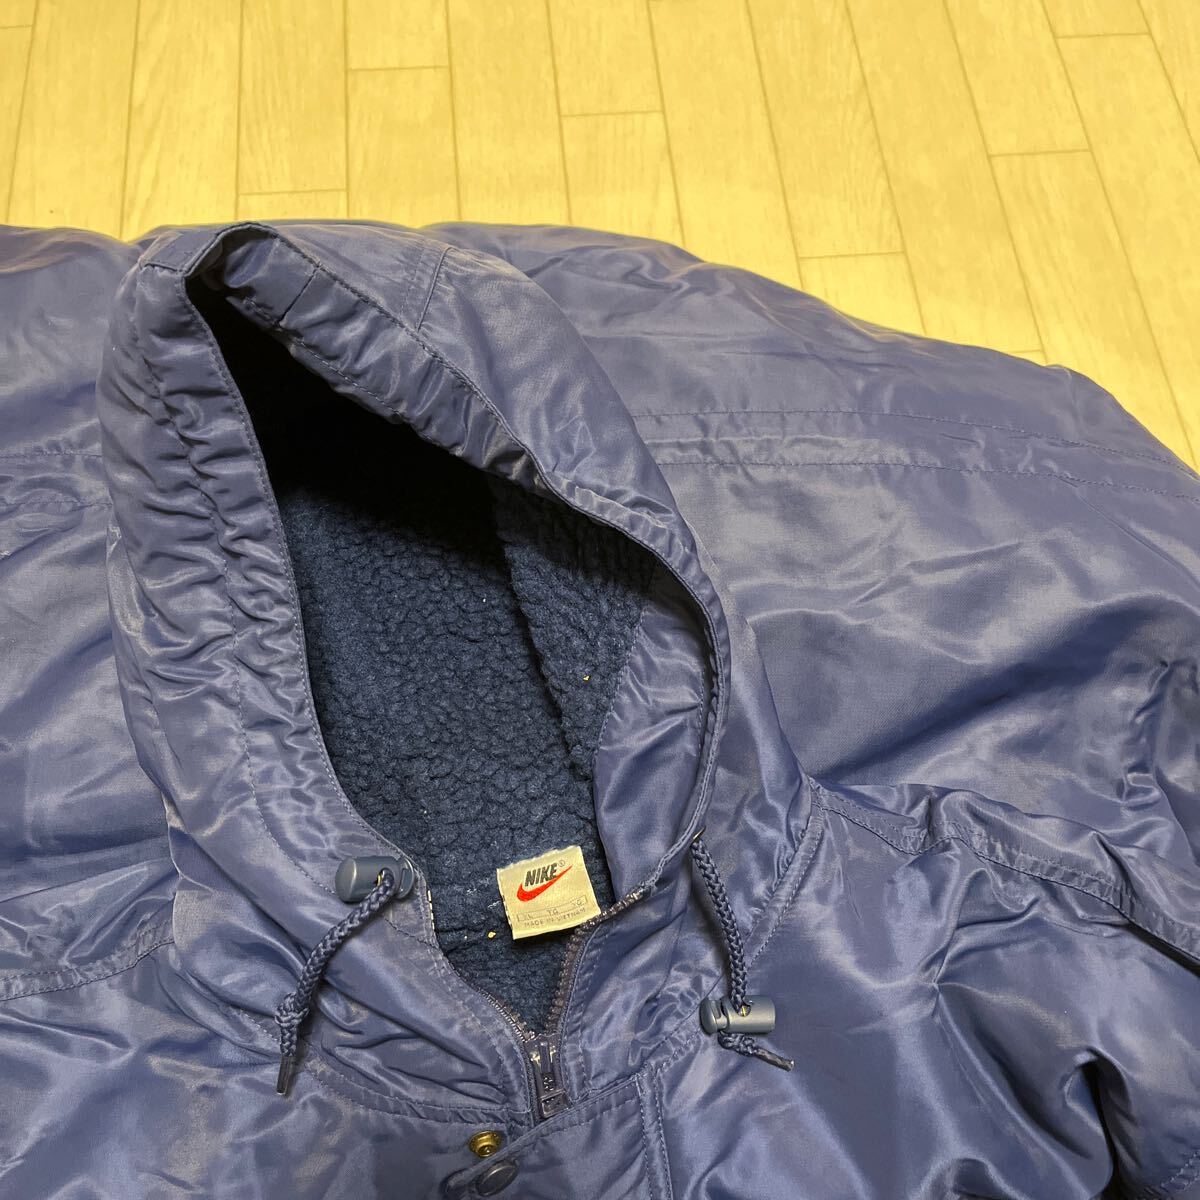  мир 244* NIKE Nike bench пальто длинное пальто большой Logo обратная сторона боа XL мужской голубой 